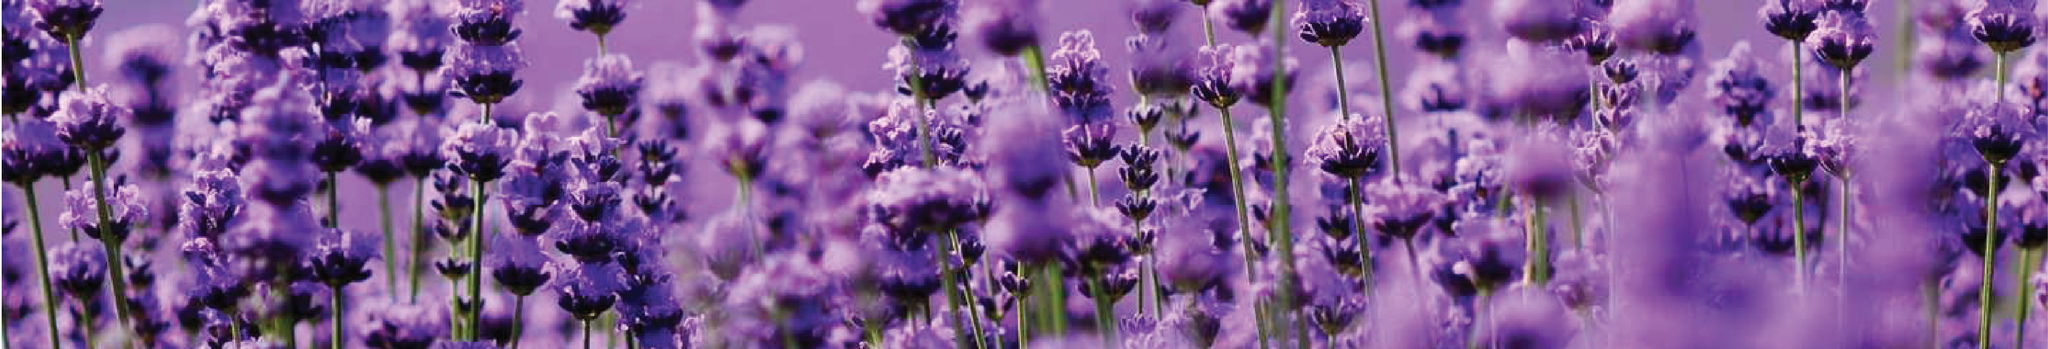 Lavender Pot